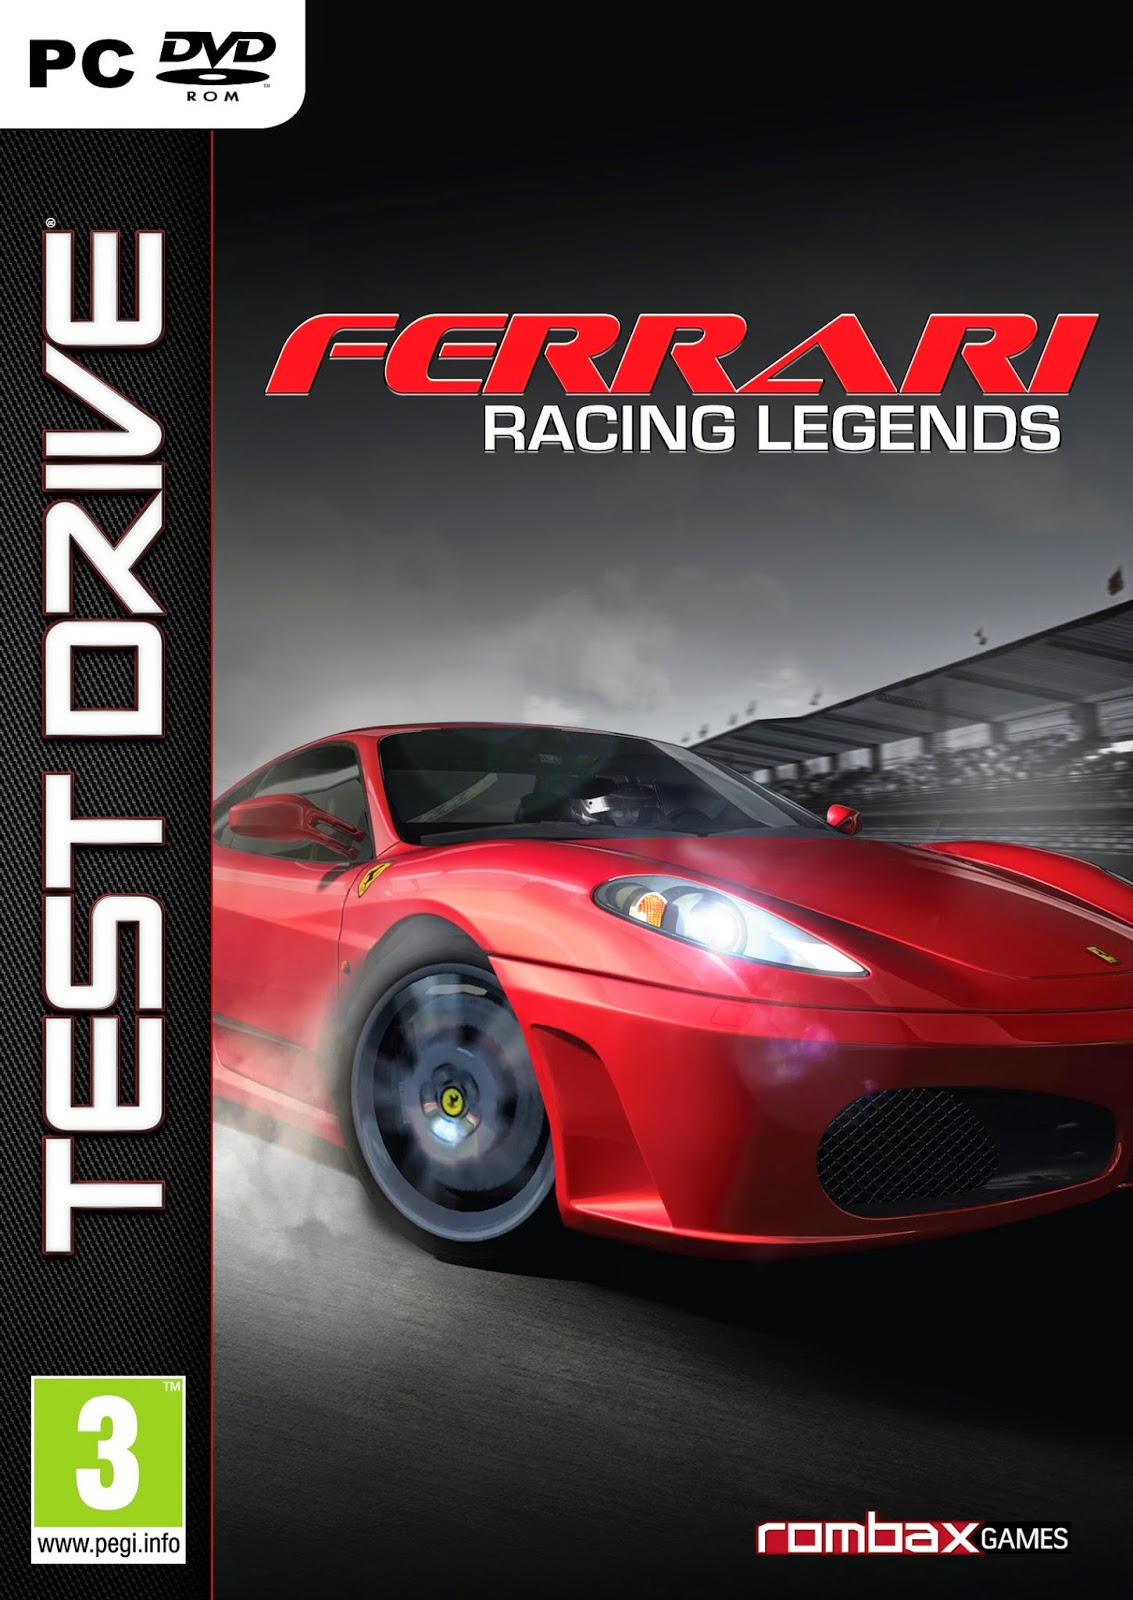 Test Drive Ferrari Free Download